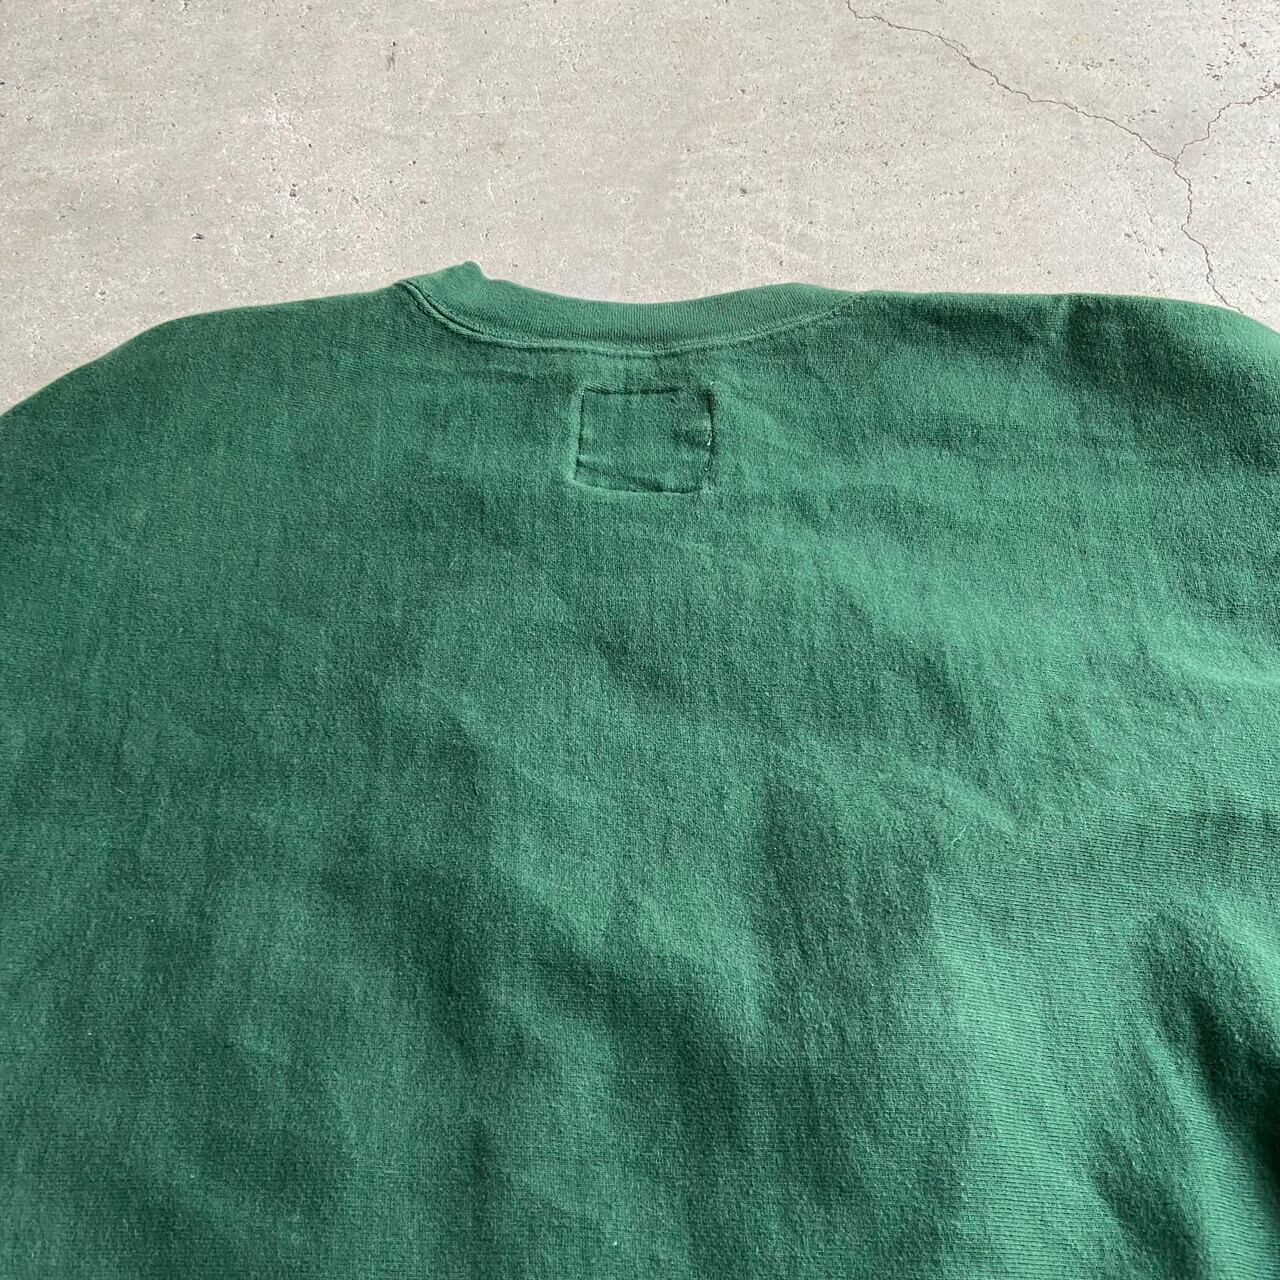 ビッグサイズ 90年代 STEVE & BARRY'S リバースウィーブタイプ MICHIGAN STATE カレッジロゴ 刺繍 スウェットシャツ  メンズ3XL相当 古着 トレーナー 90s ヴィンテージ ビンテージ グリーン 緑色 大きいサイズ 